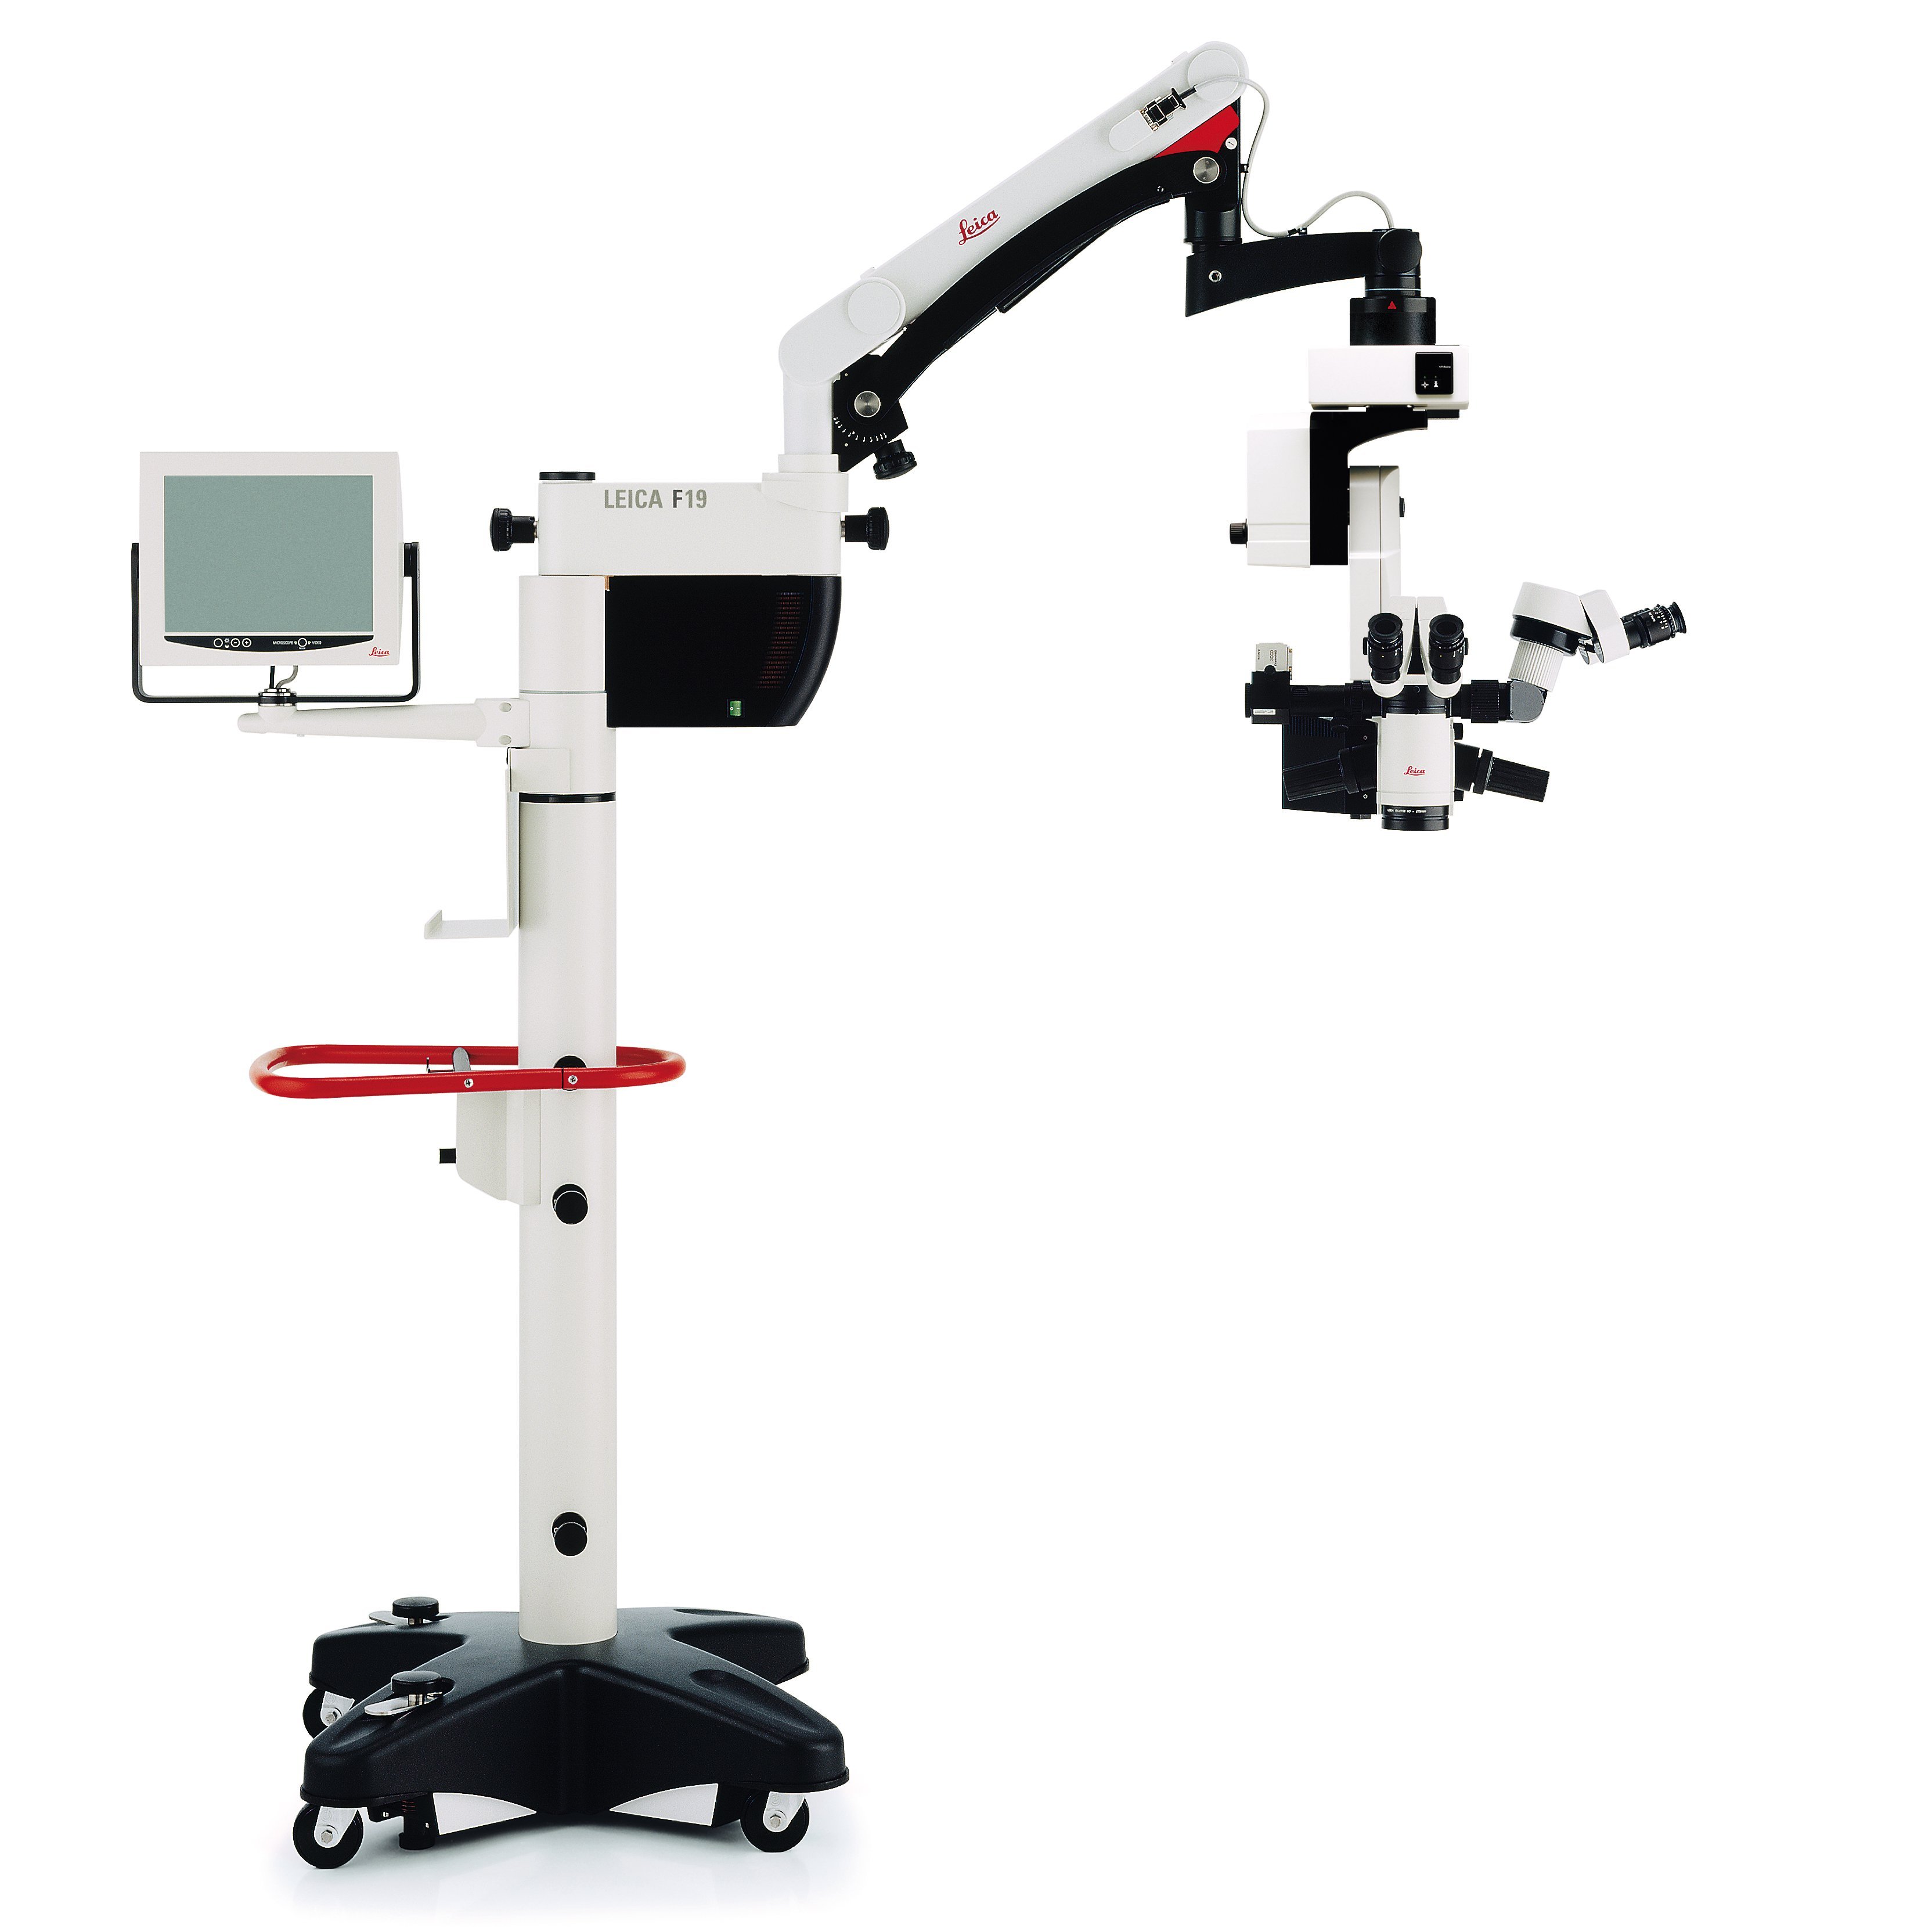 德国徕卡常规眼科手术显微镜 Leica M820 F19